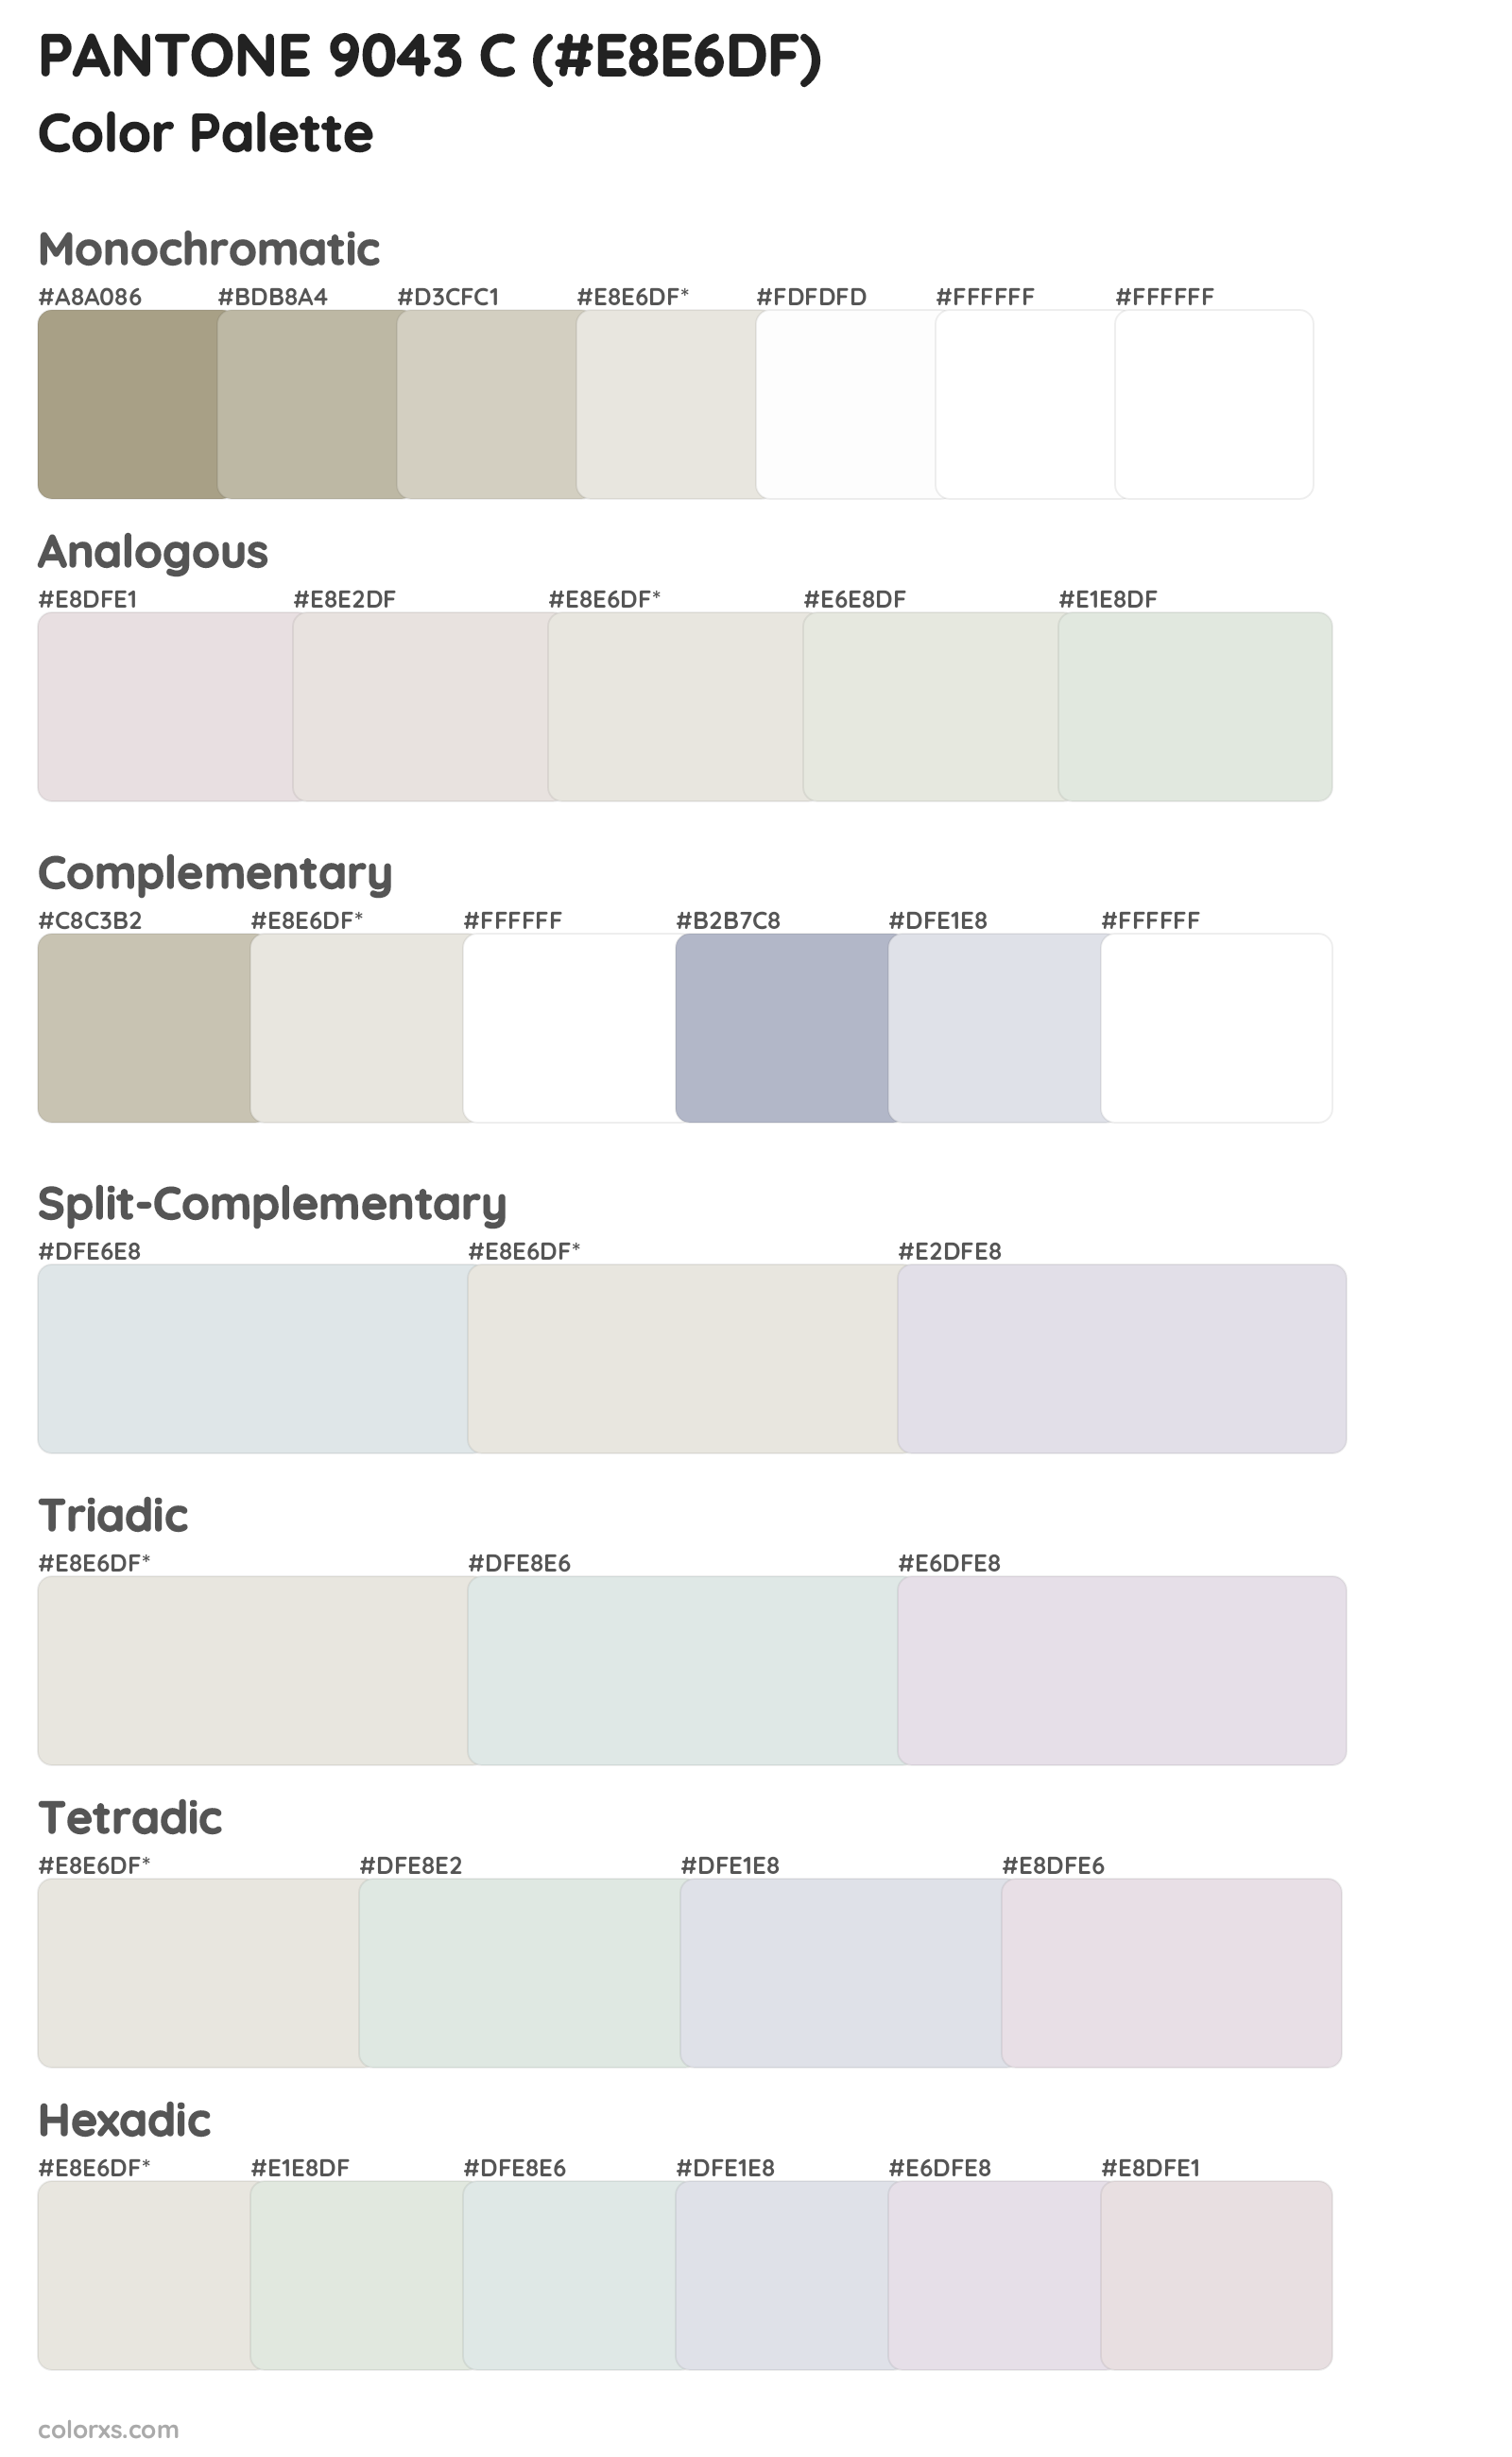 PANTONE 9043 C Color Scheme Palettes